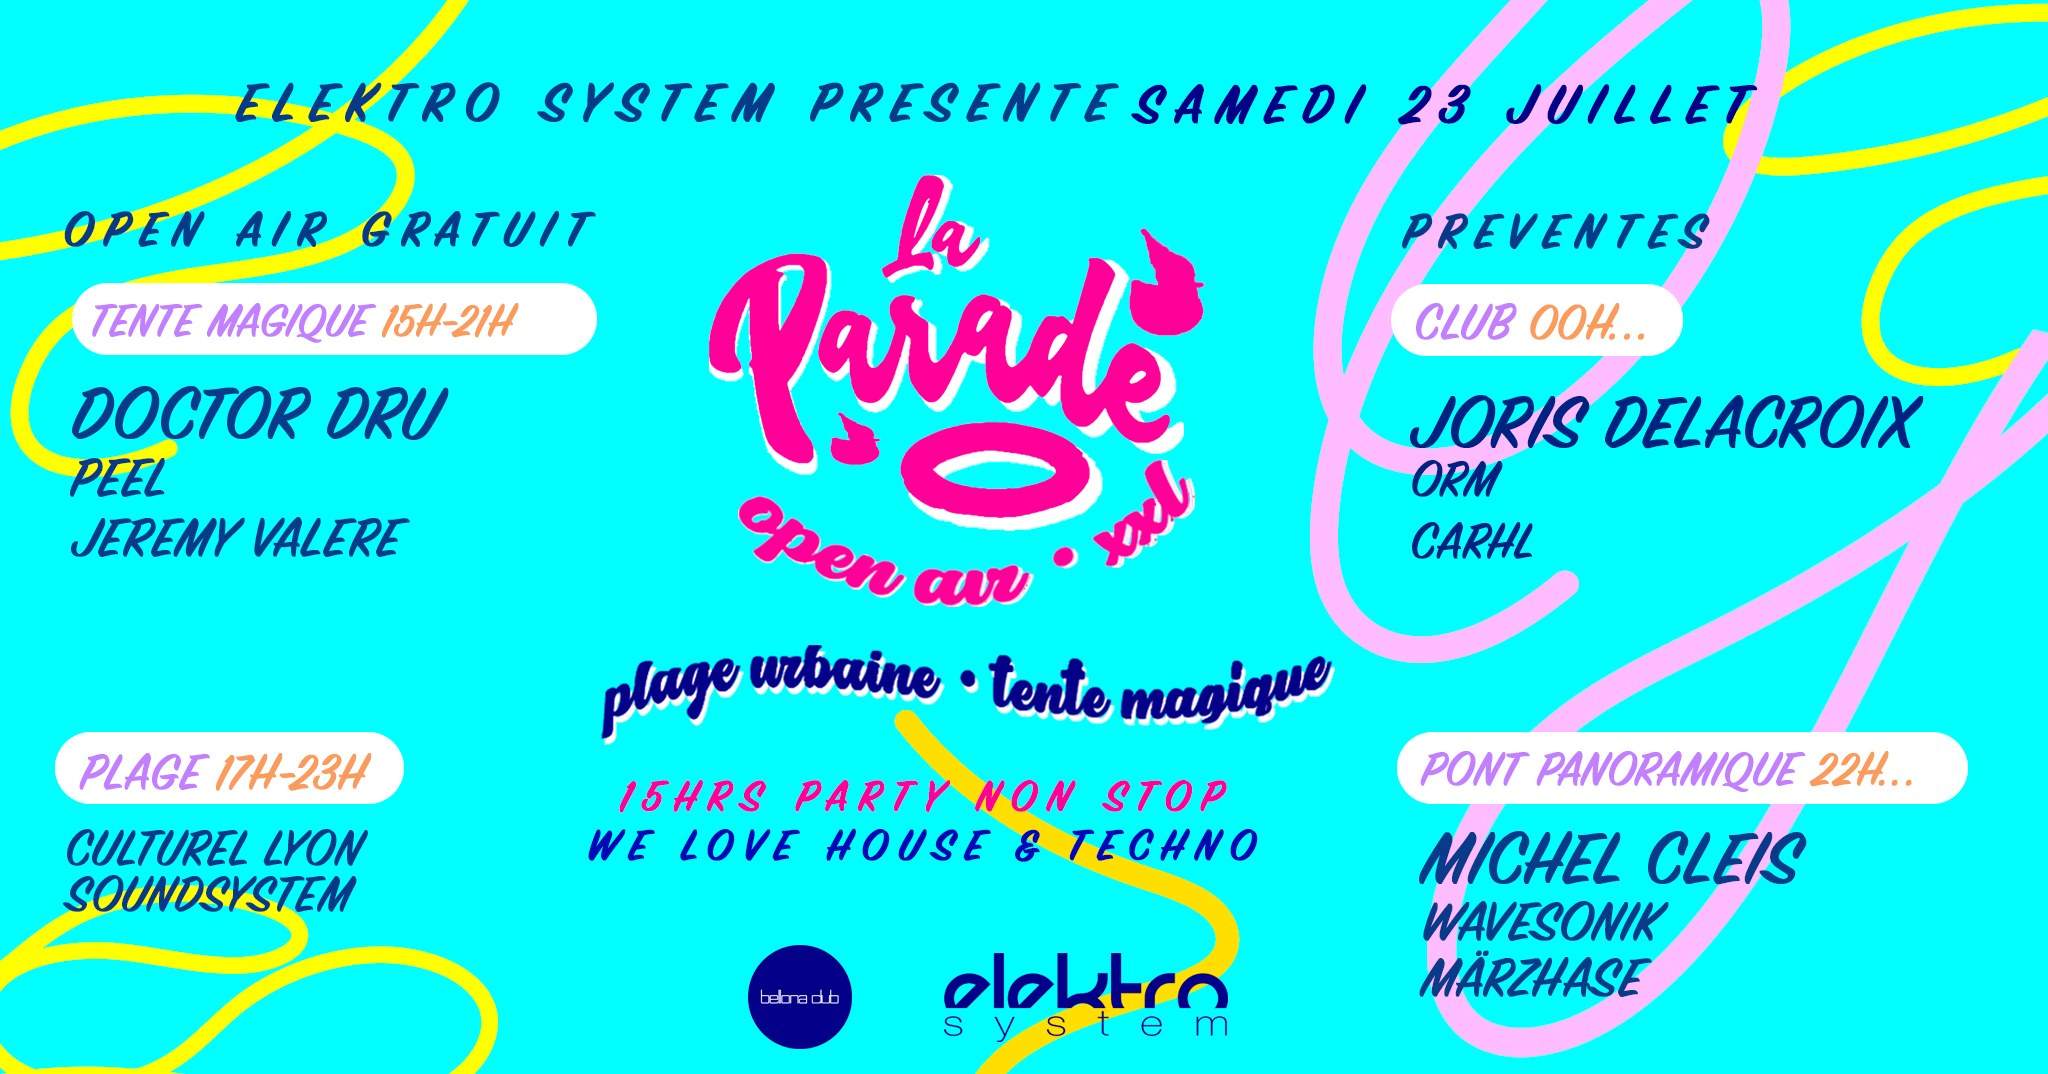 Open-air La Parade XXL avec Joris Delacroix, Michel Cleis, Doctor Dru... 15hrs party non-stop - フライヤー表